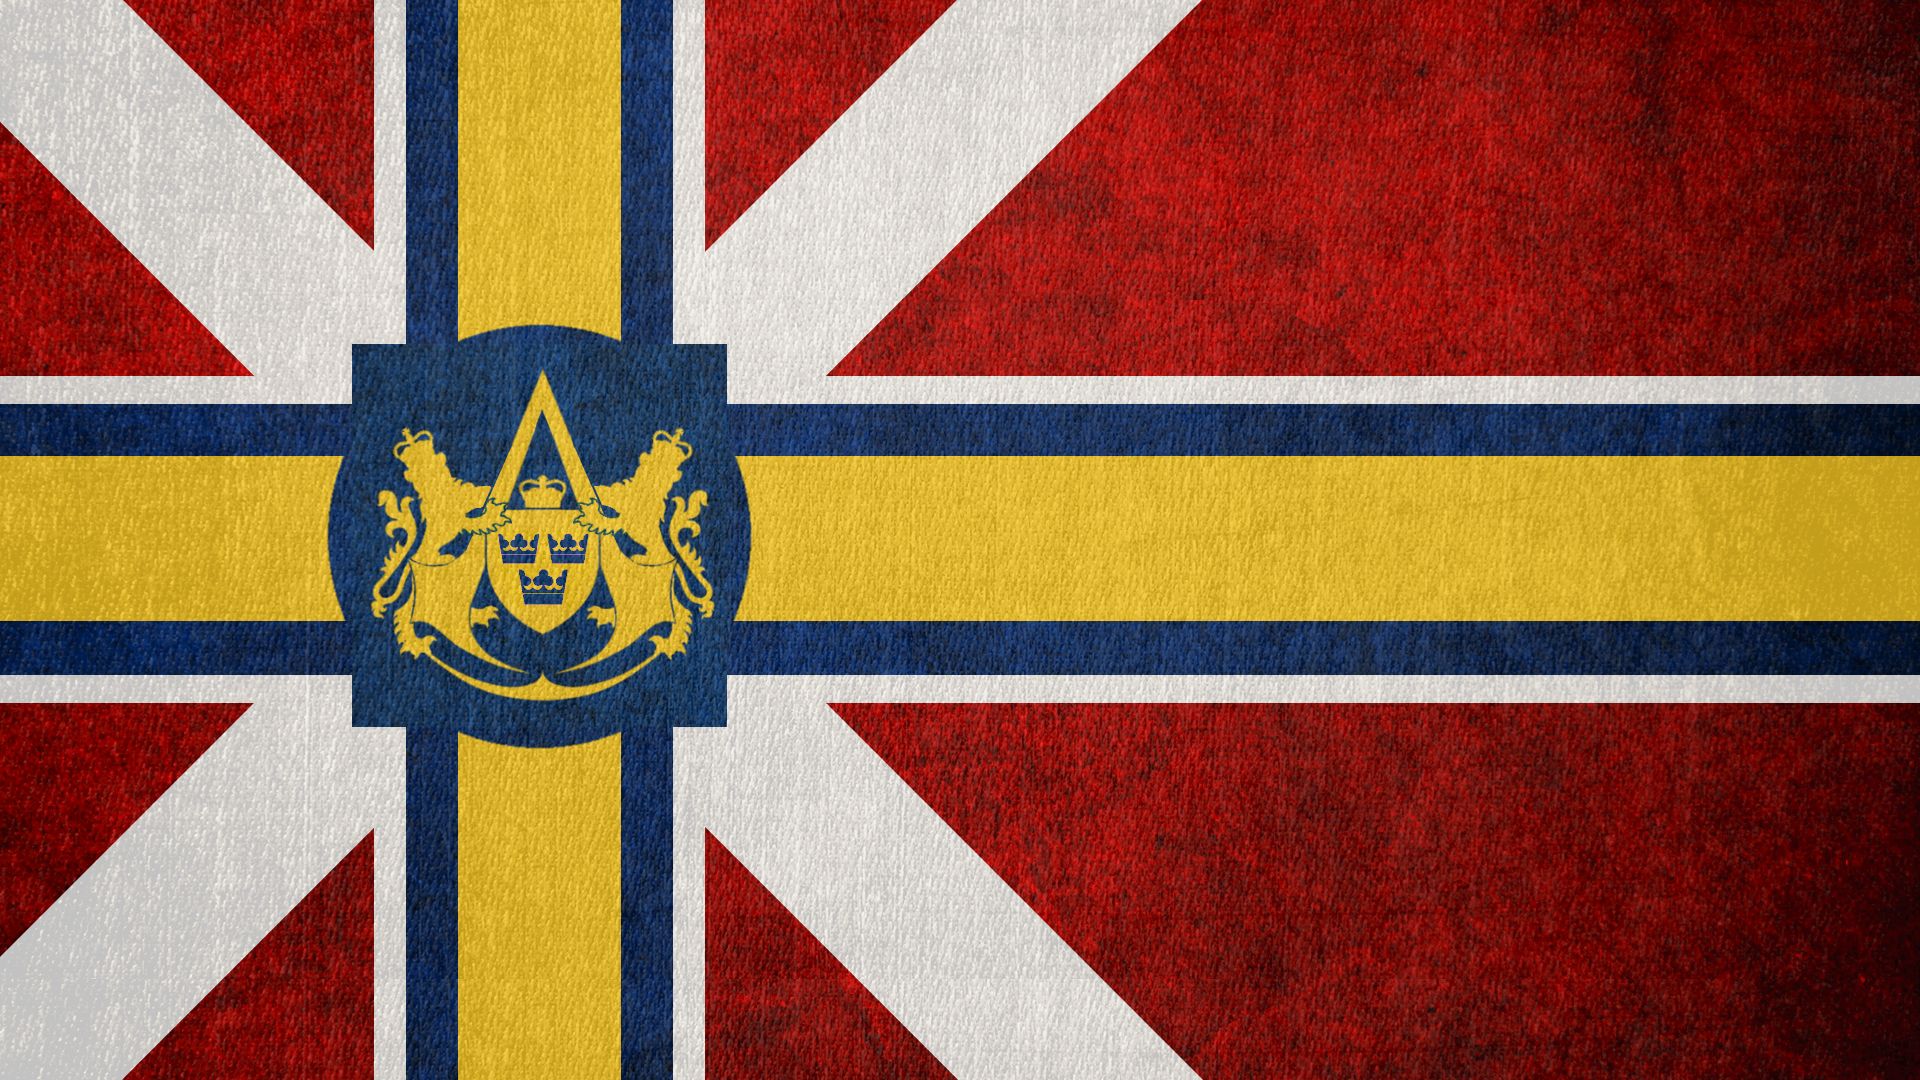 Скачать обои бесплатно Флаги, Разное, Флаг Скандинавского Содружества картинка на рабочий стол ПК